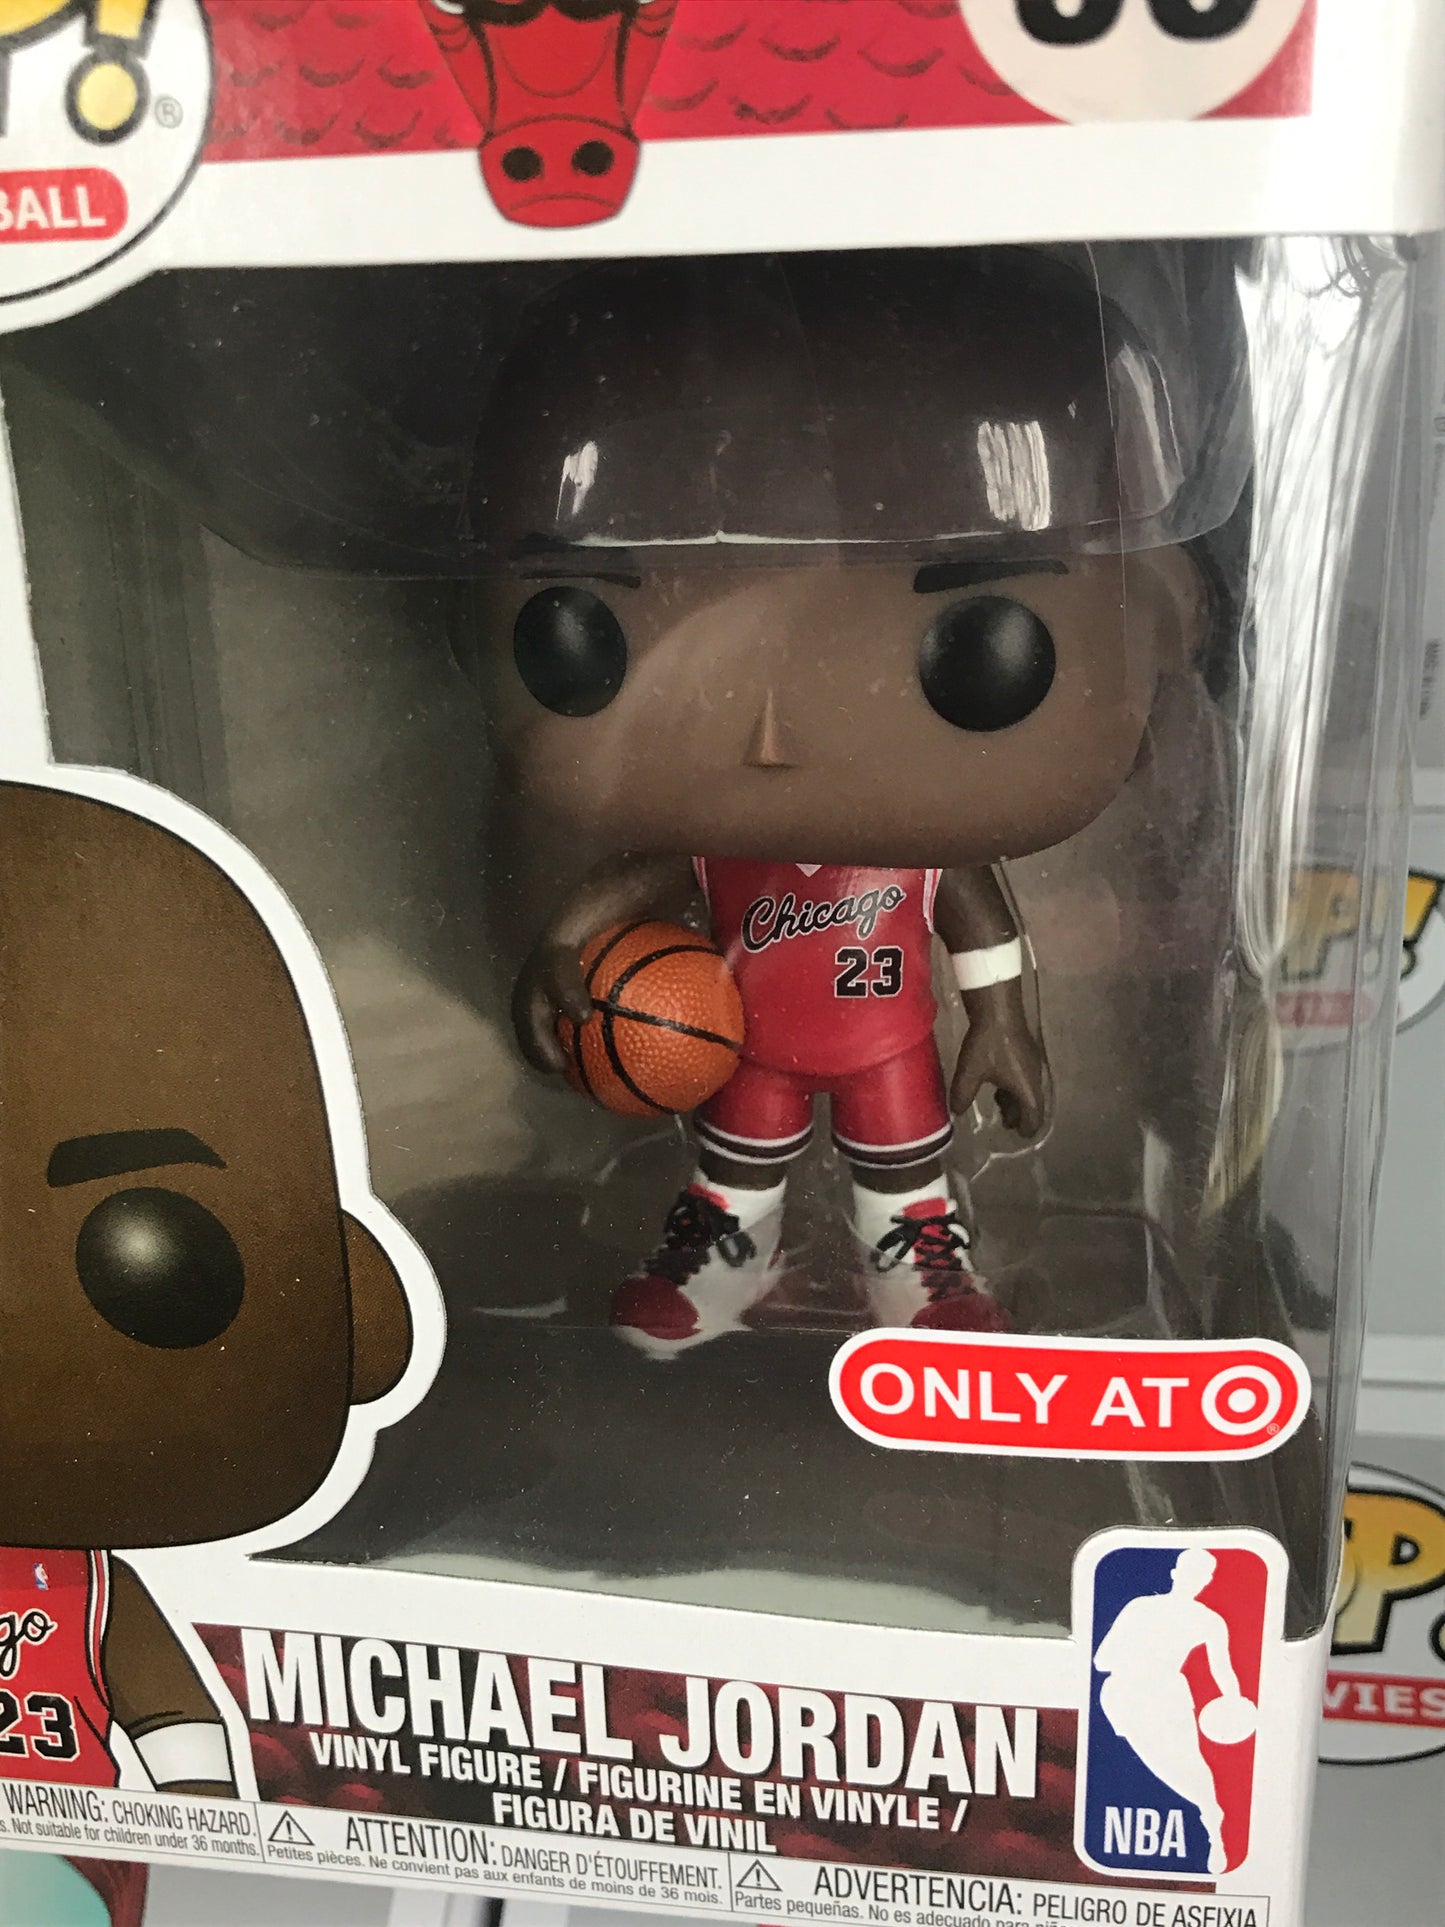 Michael Jordan target exclusive Funko Pop! Vinyl figure sports